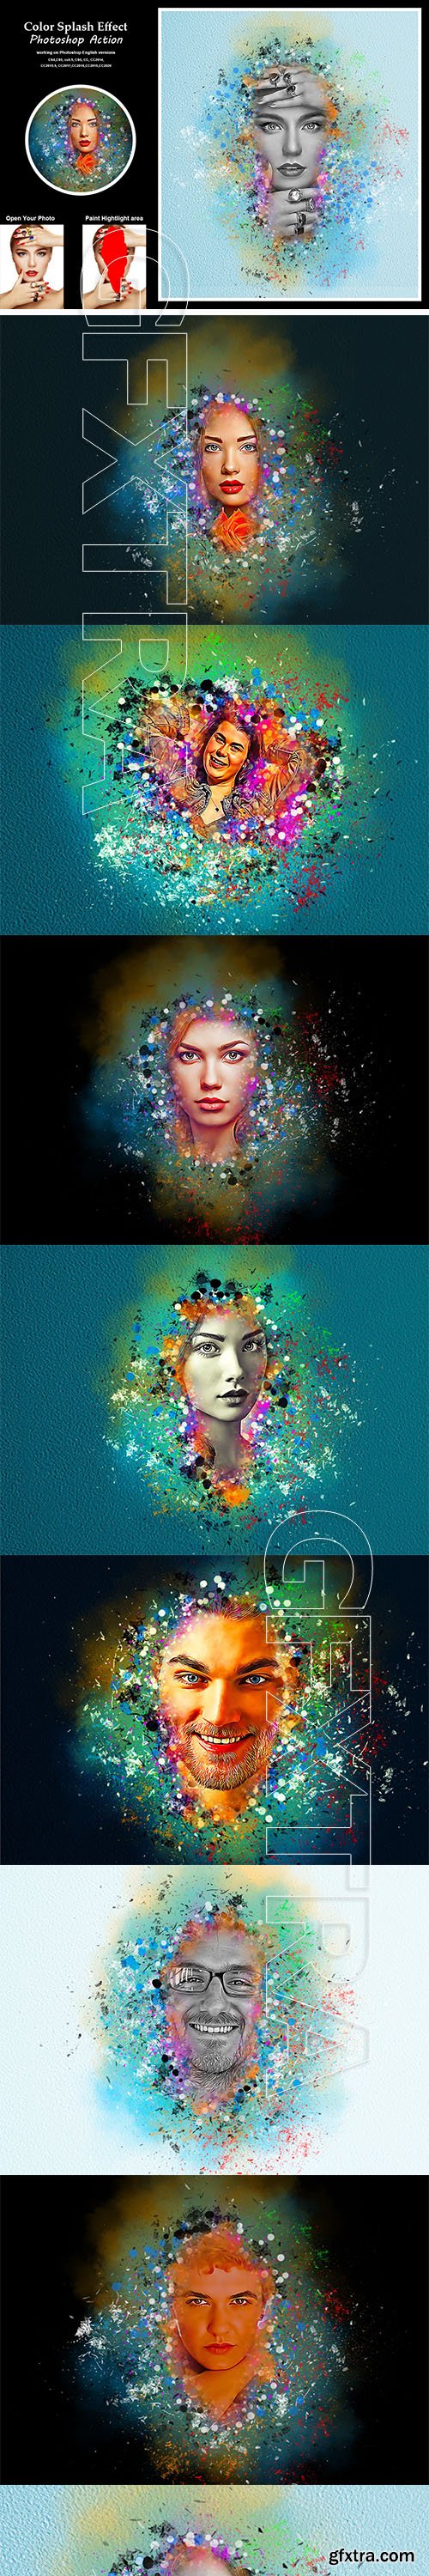 CreativeMarket - Color Splash Effect Photoshop Action 5417413